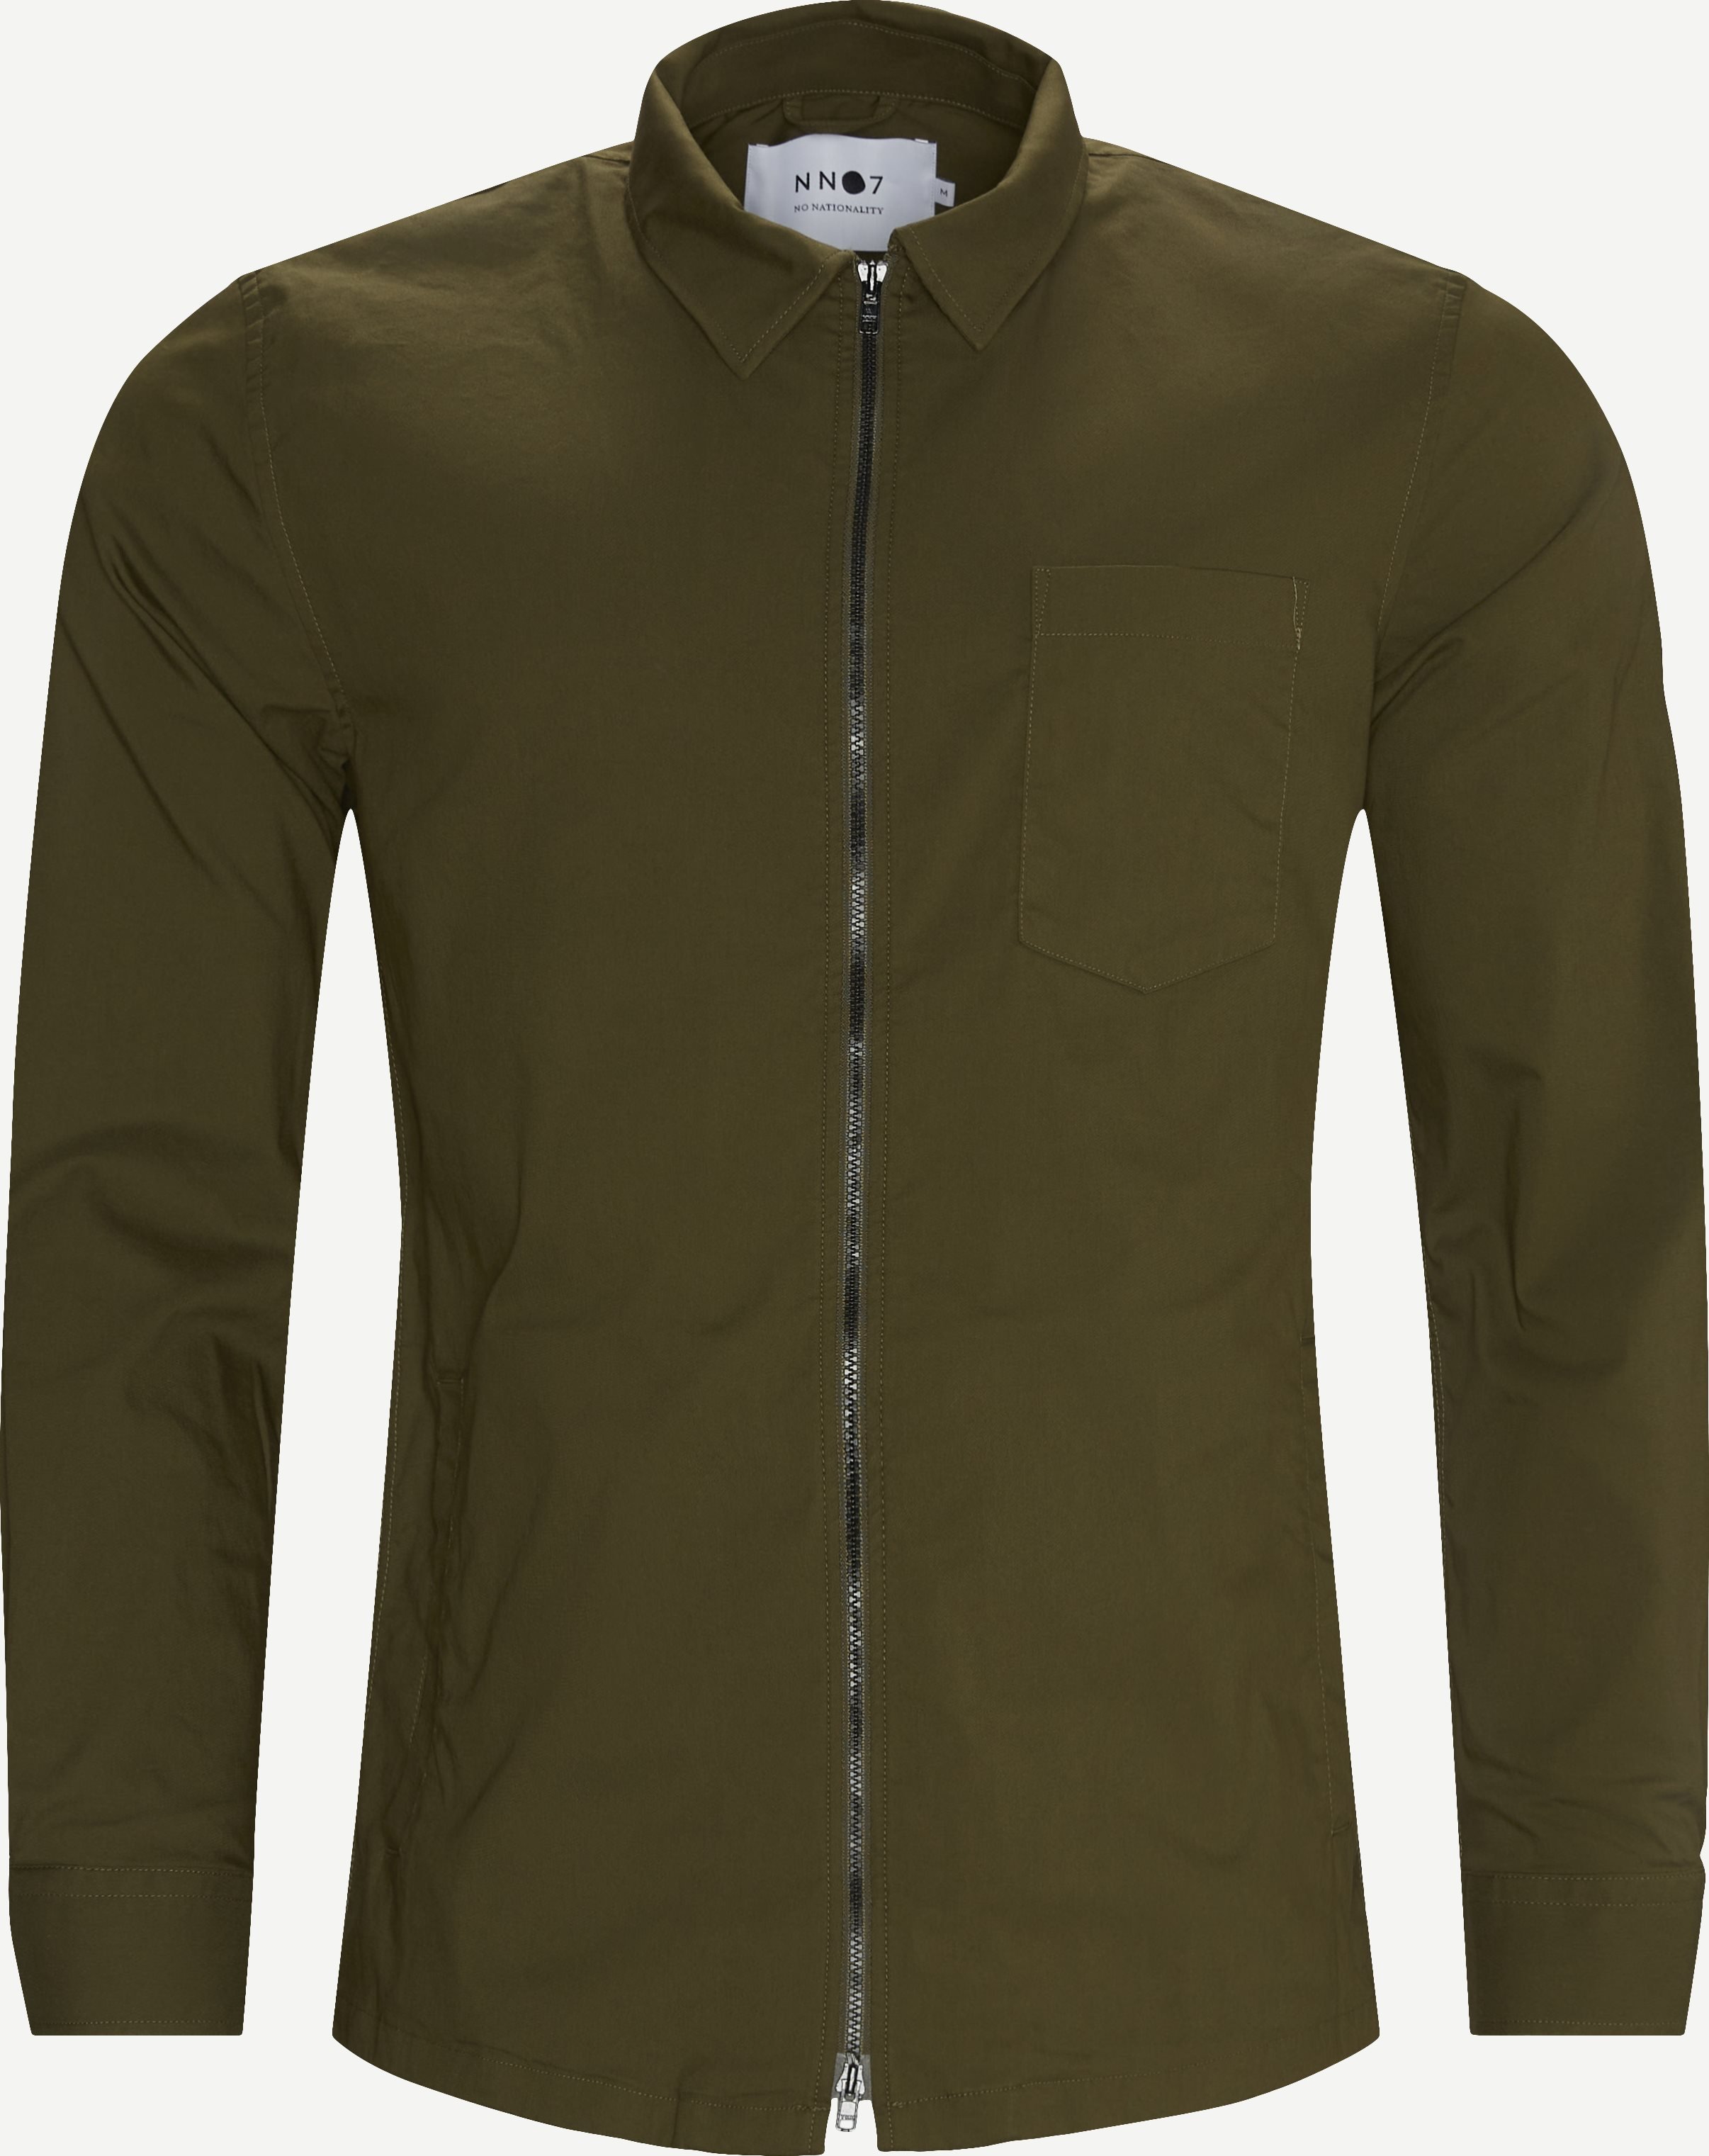 Zip Shirt - Lightweight jackets - Regular fit - Army